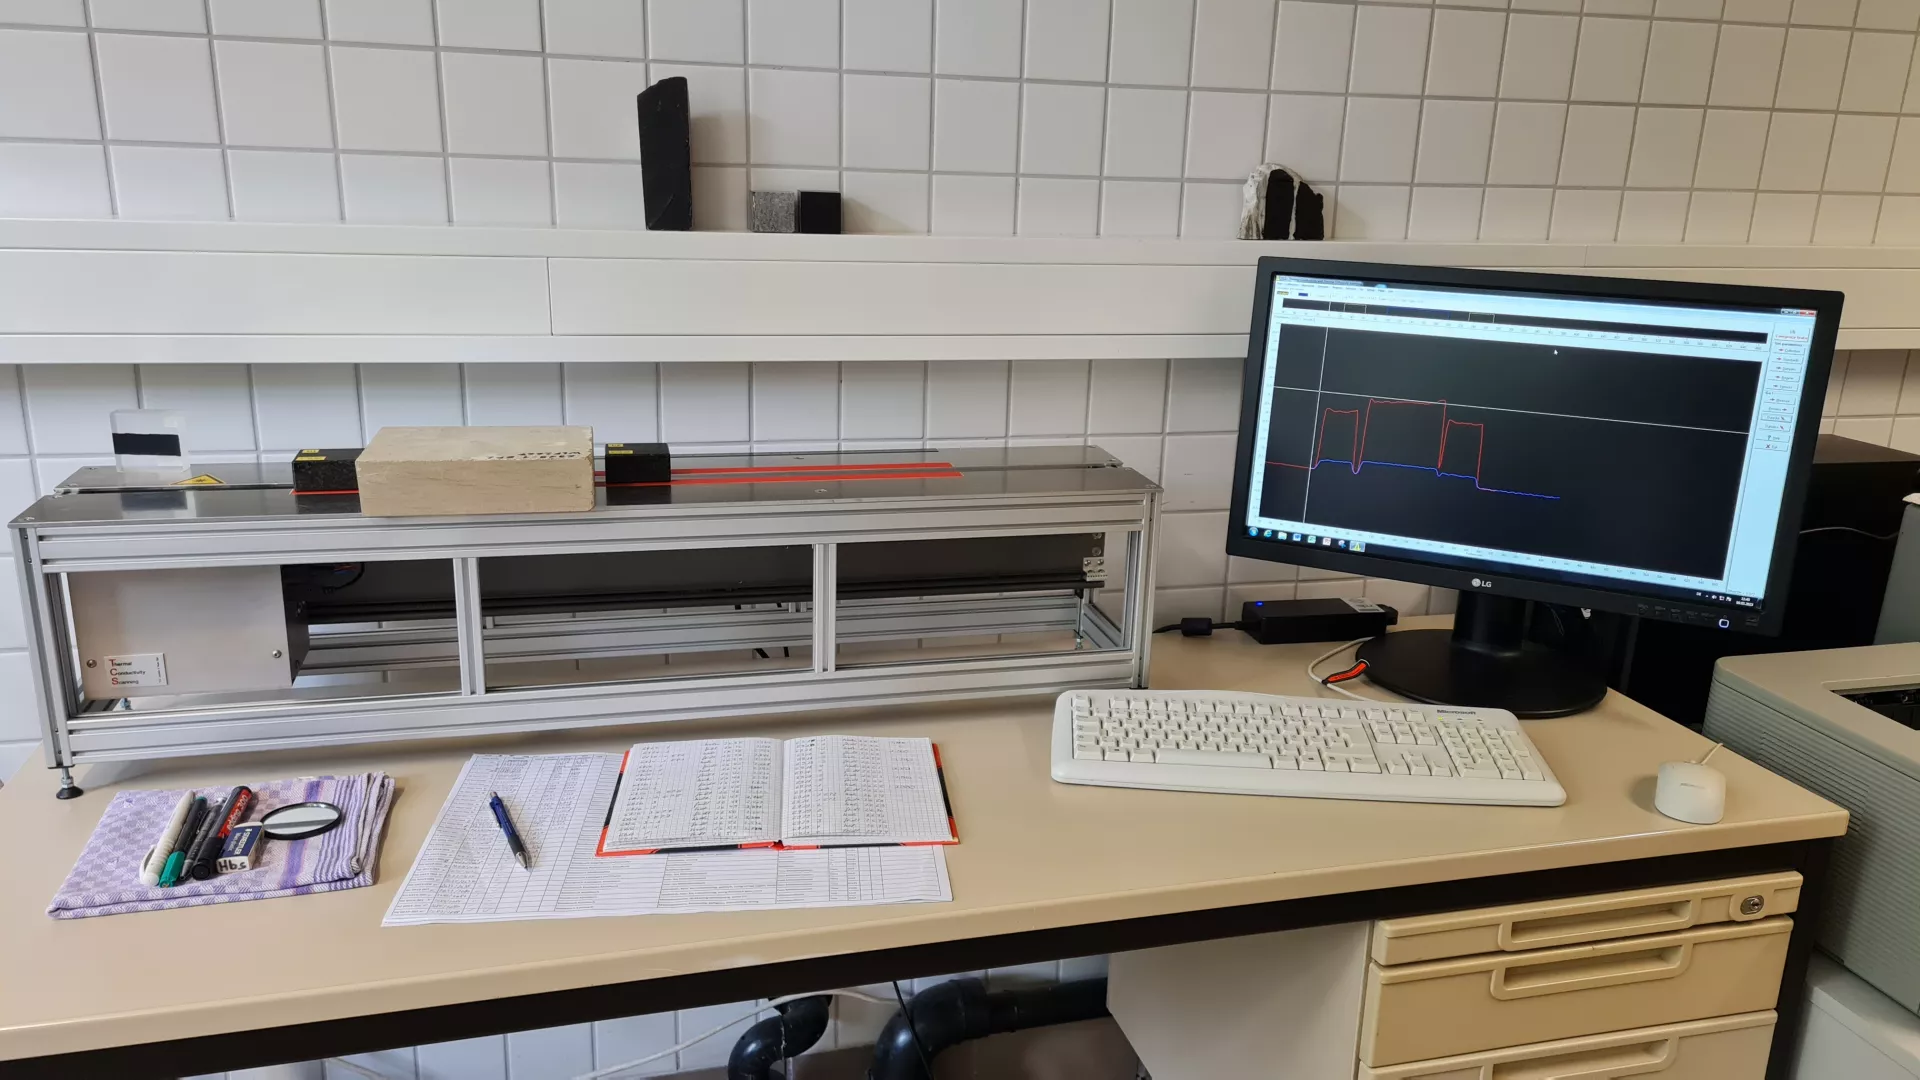 Das Foto zeigt ein etwa ein Meter langes und 30 Zentimeter hohes Laborgerät, welches auf einem Schreibtisch steht. Mit dem Gerät kann die Wärmeleitfähigkeit von Festgesteinen gemessen werden. An das Gerät ist ein Computer mit Bildschirm und Tastatur angeschlossen.